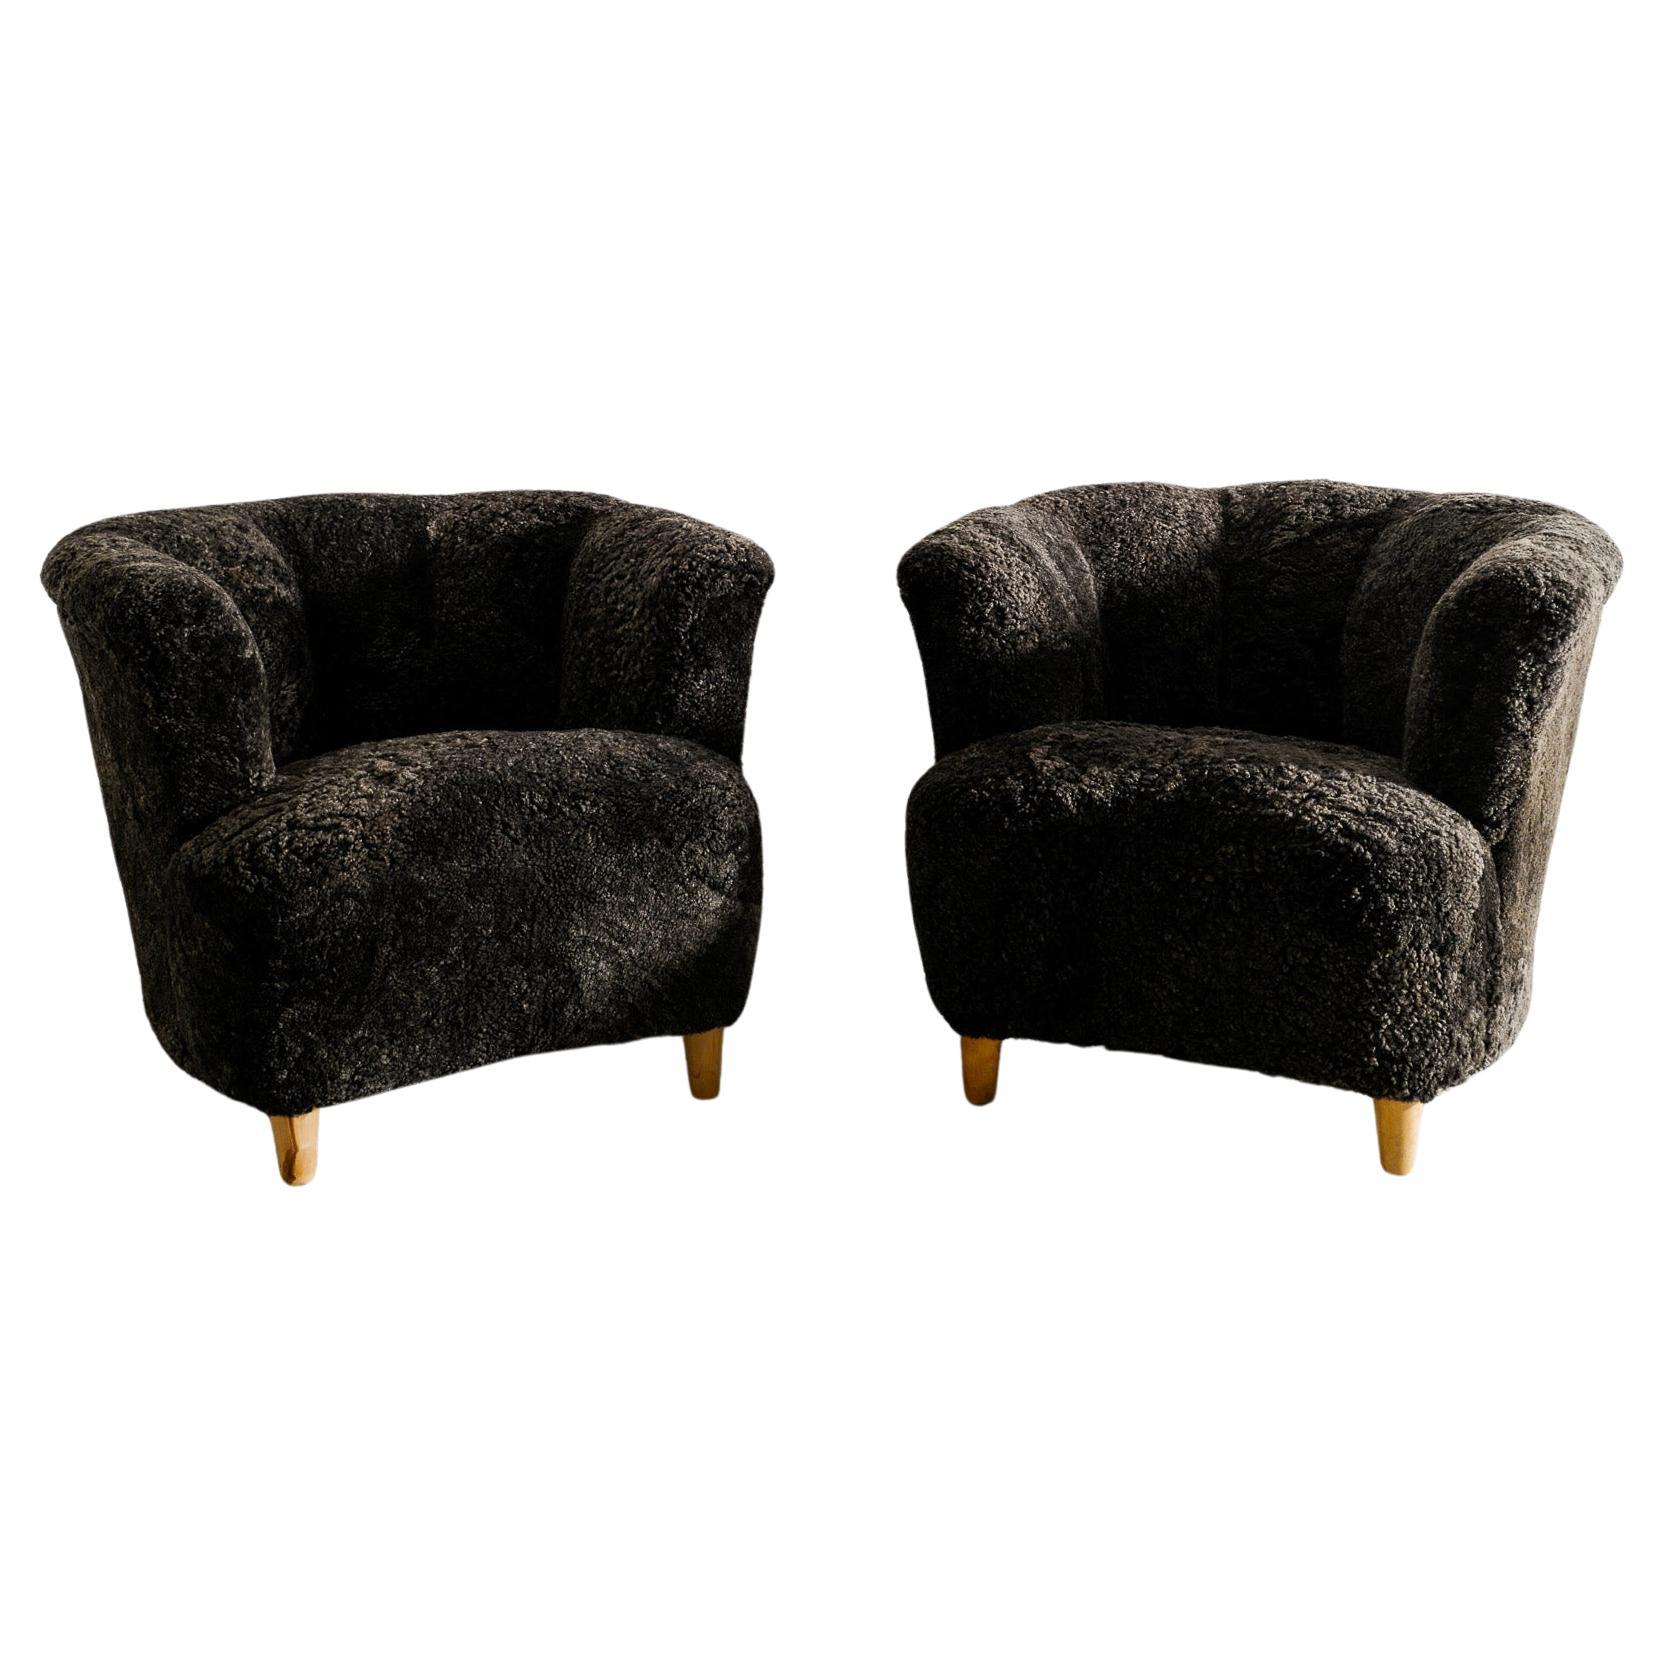 Paar geschwungene schwedische moderne Sessel mit Armlehne aus grauem Schafsleder, hergestellt 1940er Jahre